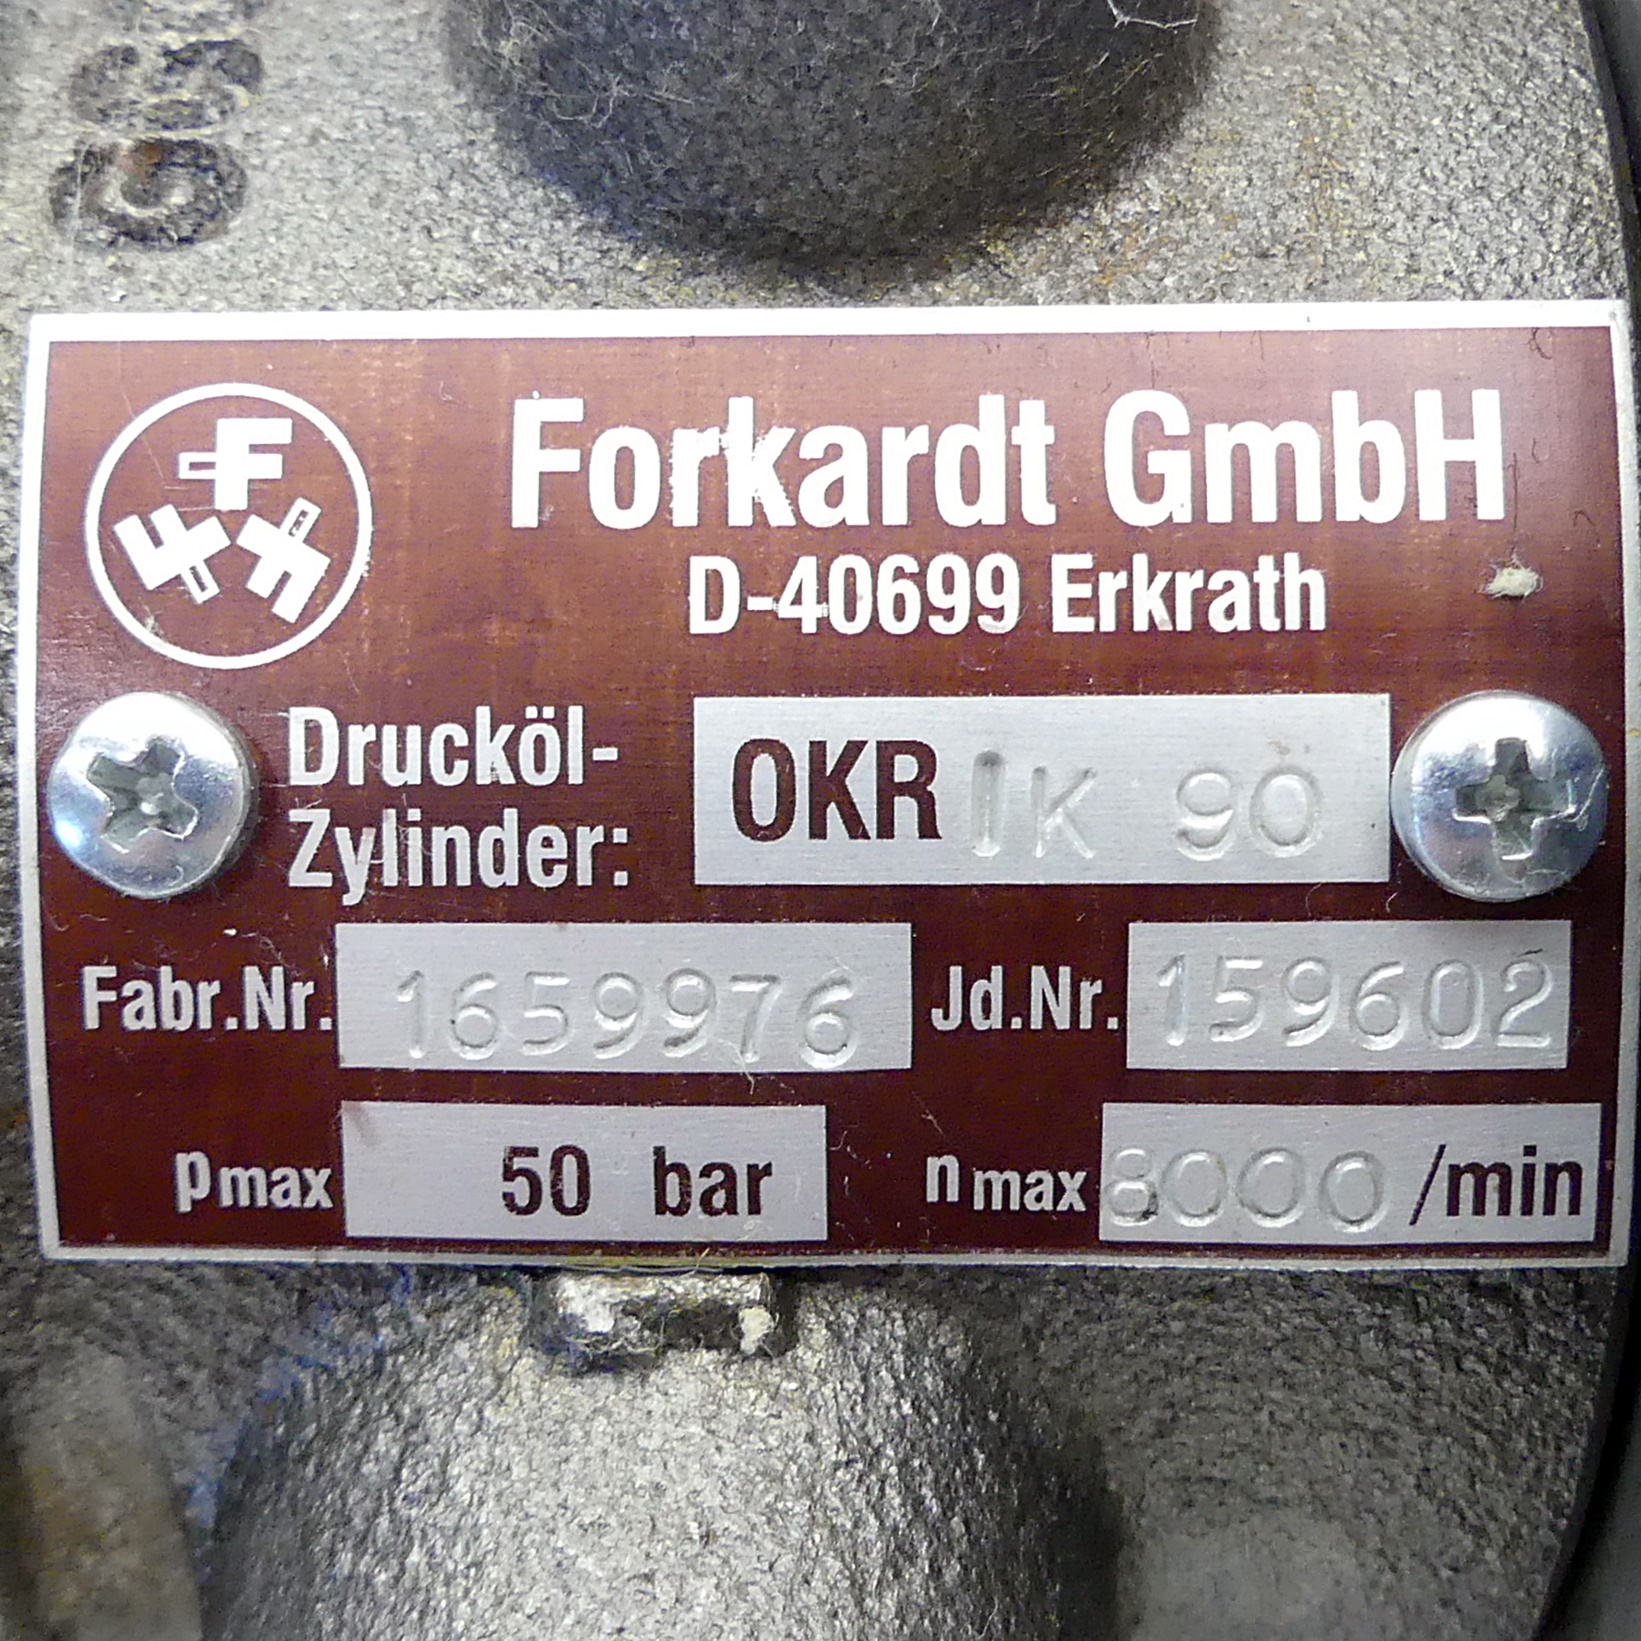 Drucköl-Zylinder OKR IK90 